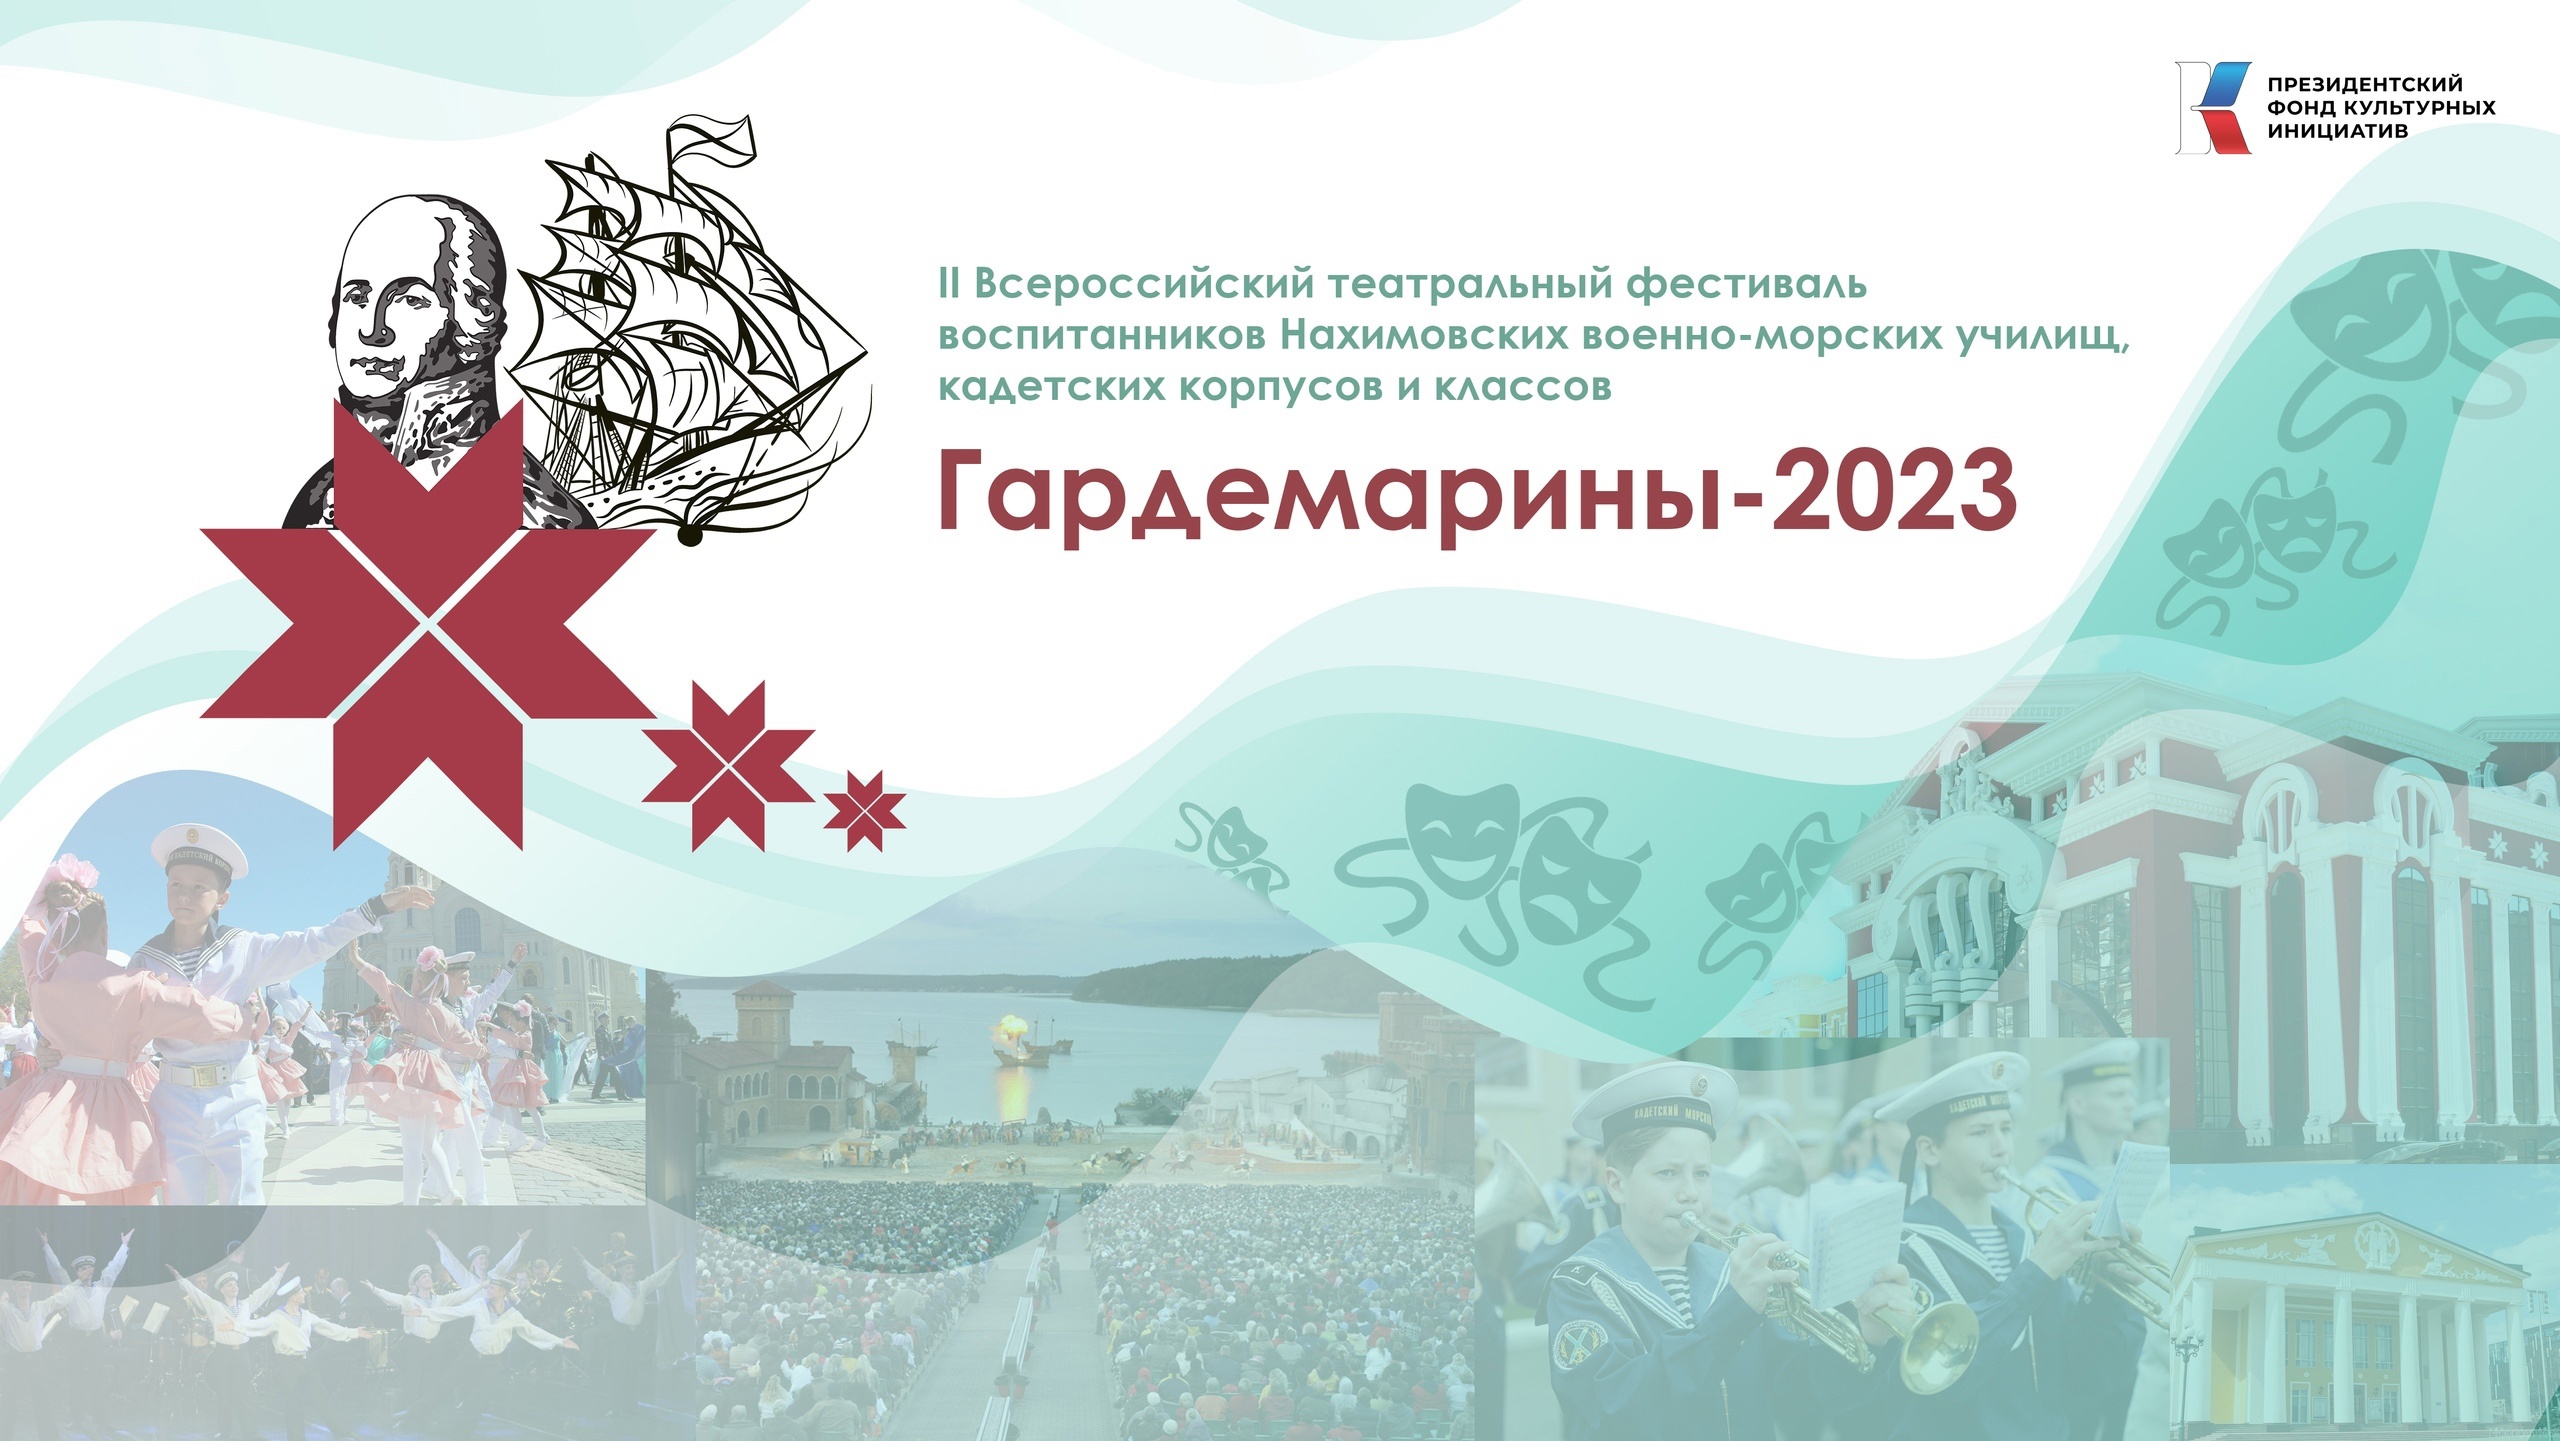 II Всероссийский театральный фестиваль «ГАРДЕМАРИНЫ-2023».